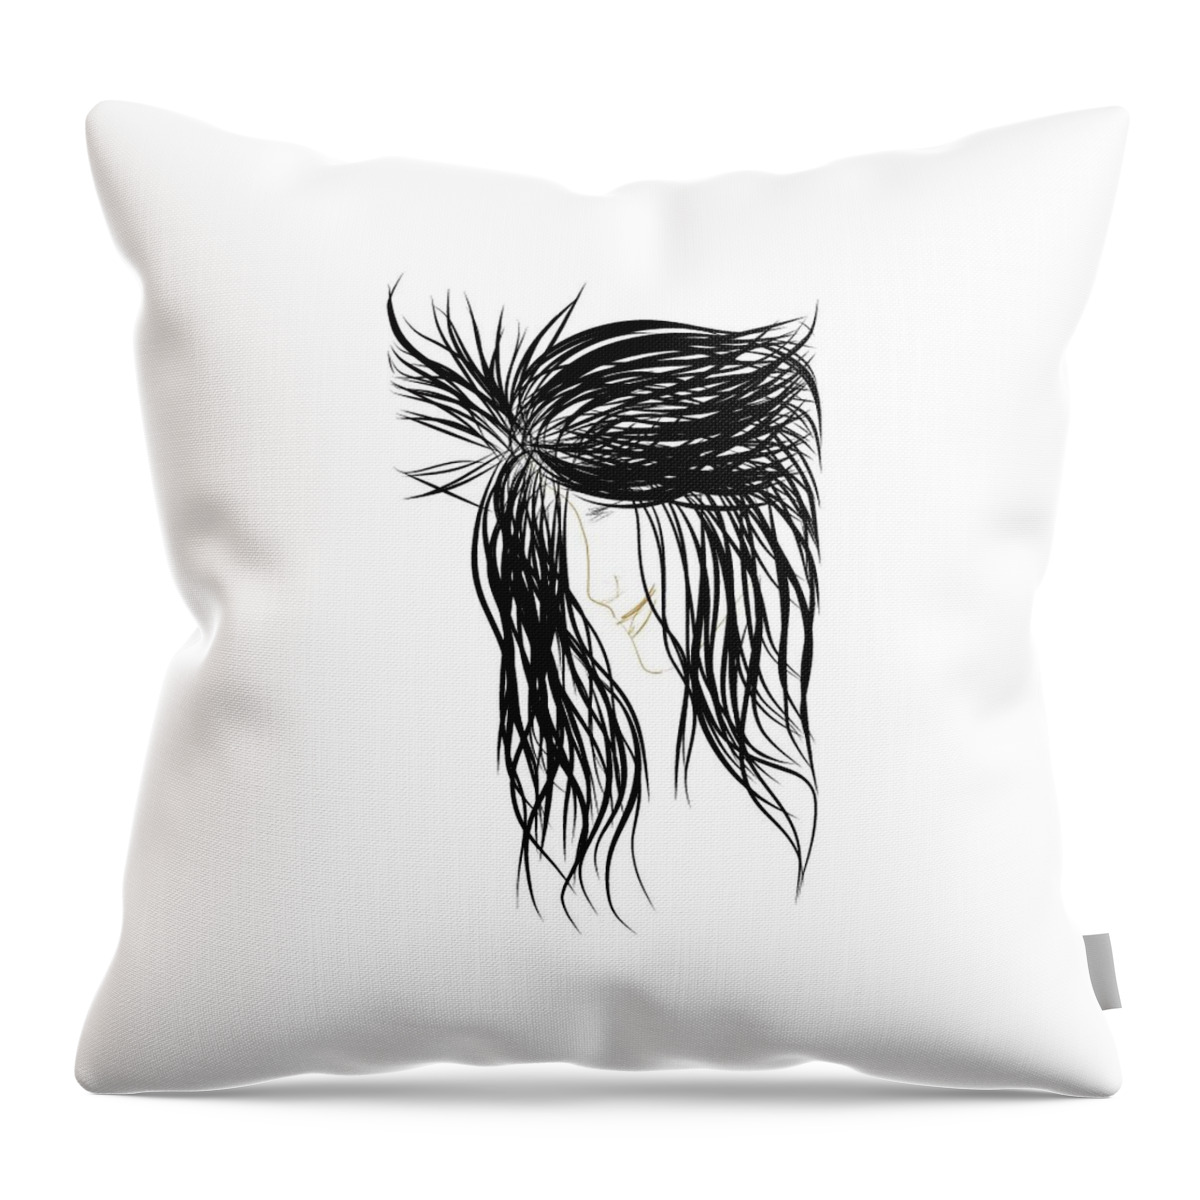 Woman Throw Pillow featuring the digital art Black Hair by Faashie Sha